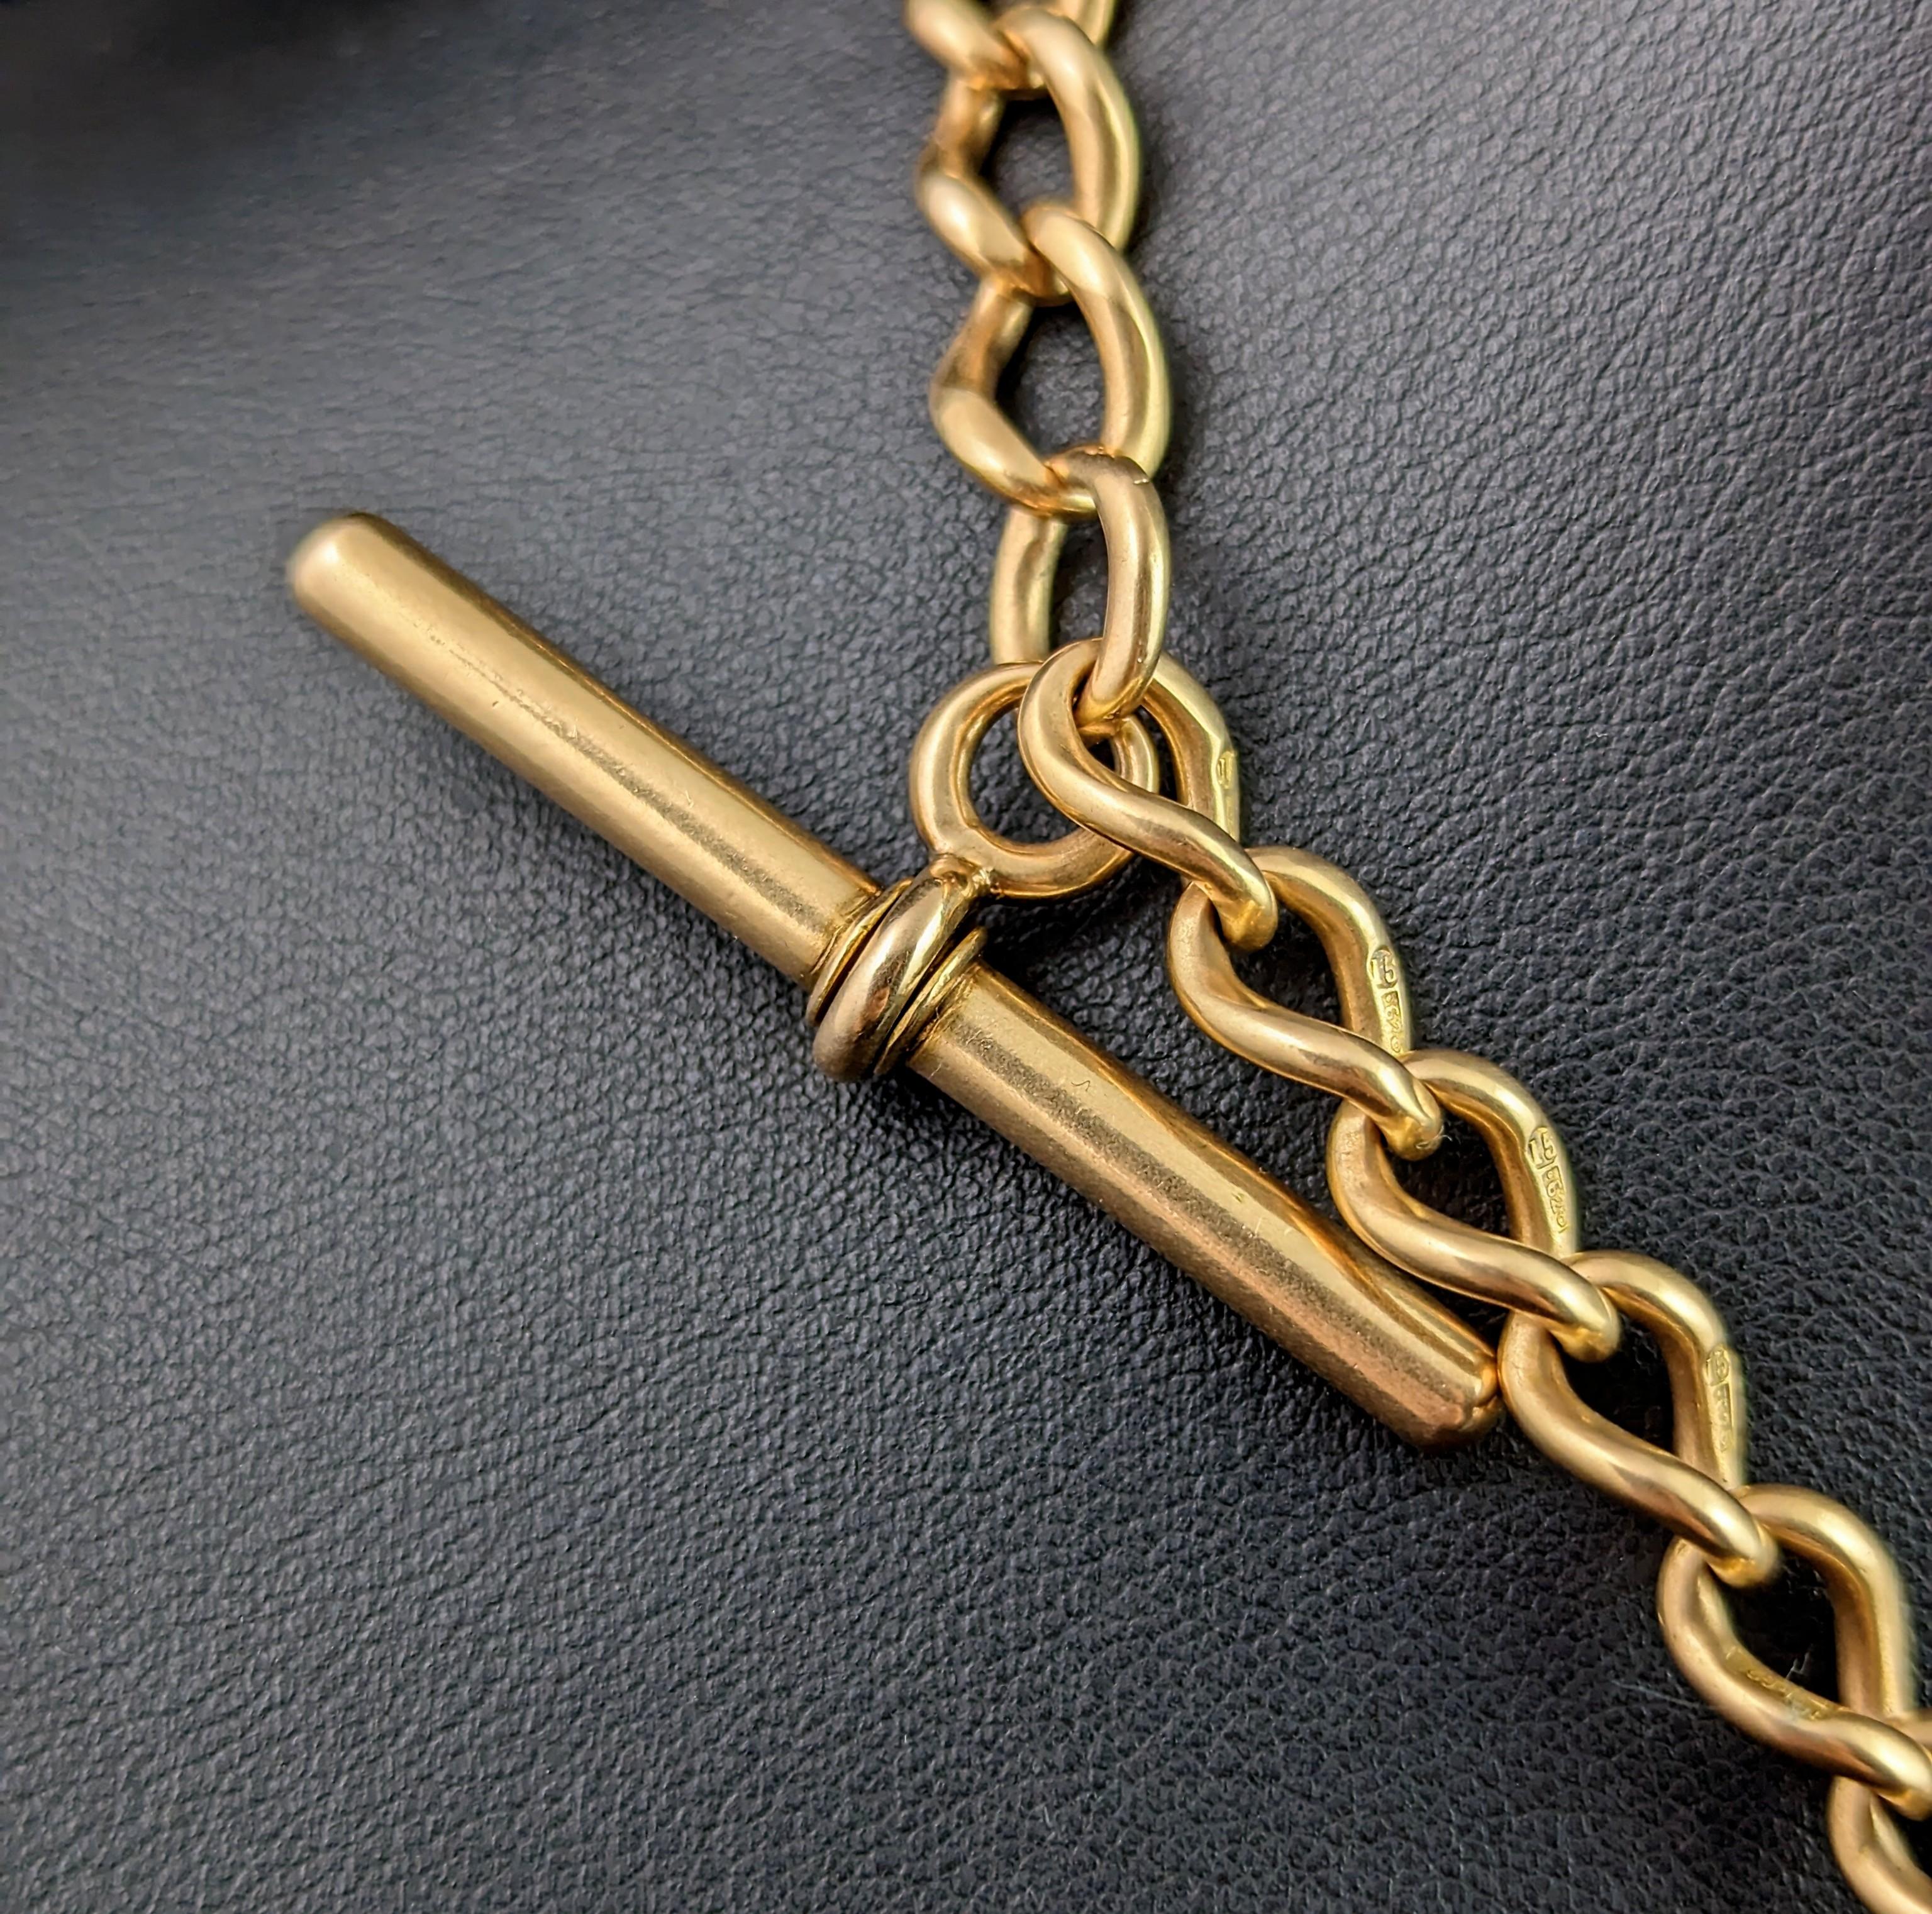 Antique 15k gold Albert chain, Watch chain, heavy  2